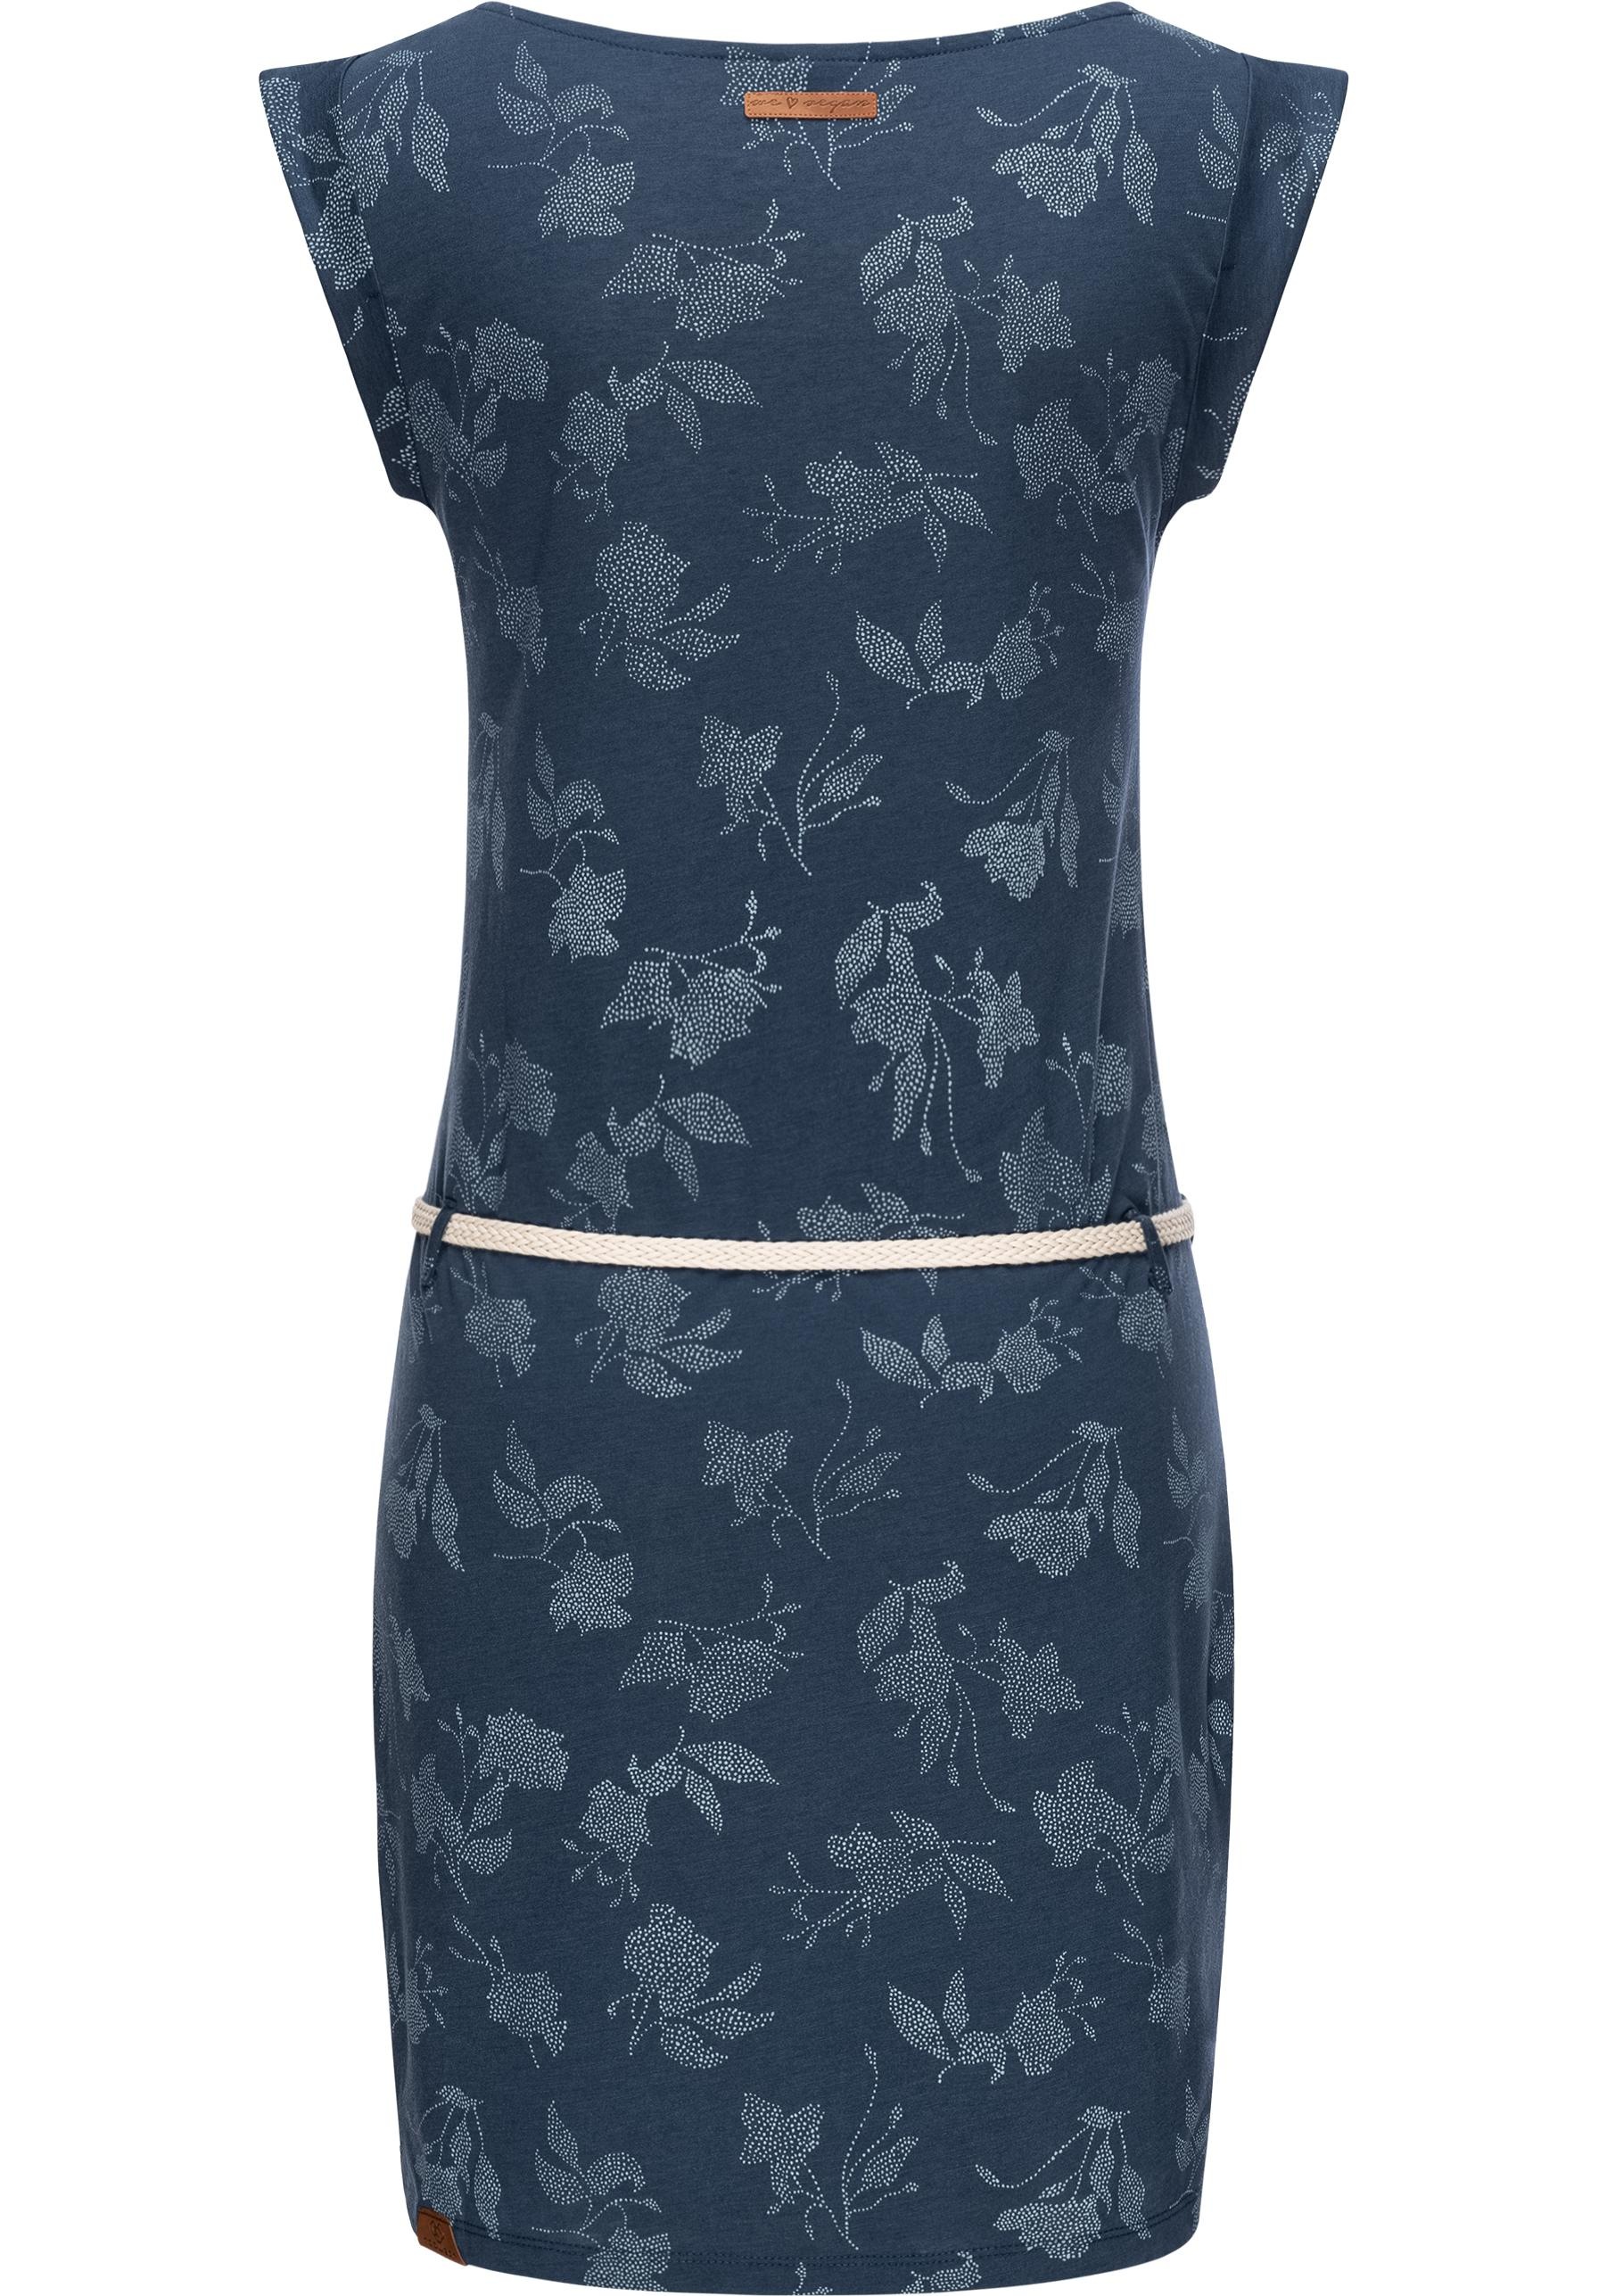 Ragwear Shirtkleid »Tag Rose Intl.«, stylisches Sommerkleid mit Print und hochwertigem Gürtel